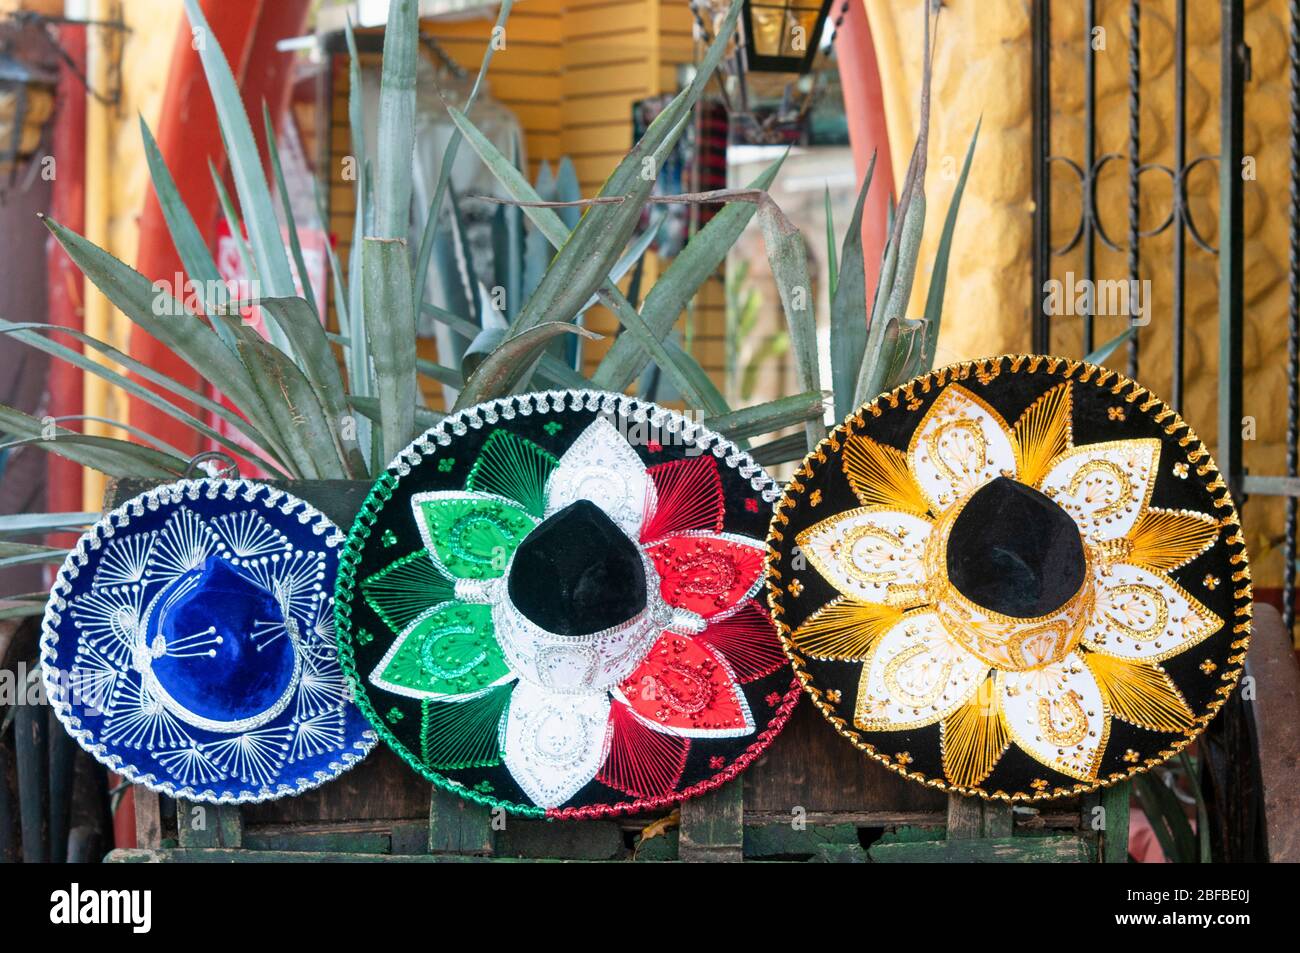 Sommreri messicani in primo piano. Il sommero messicano è un oggetto in grande richiesta da turisti provenienti da tutto il mondo Foto Stock